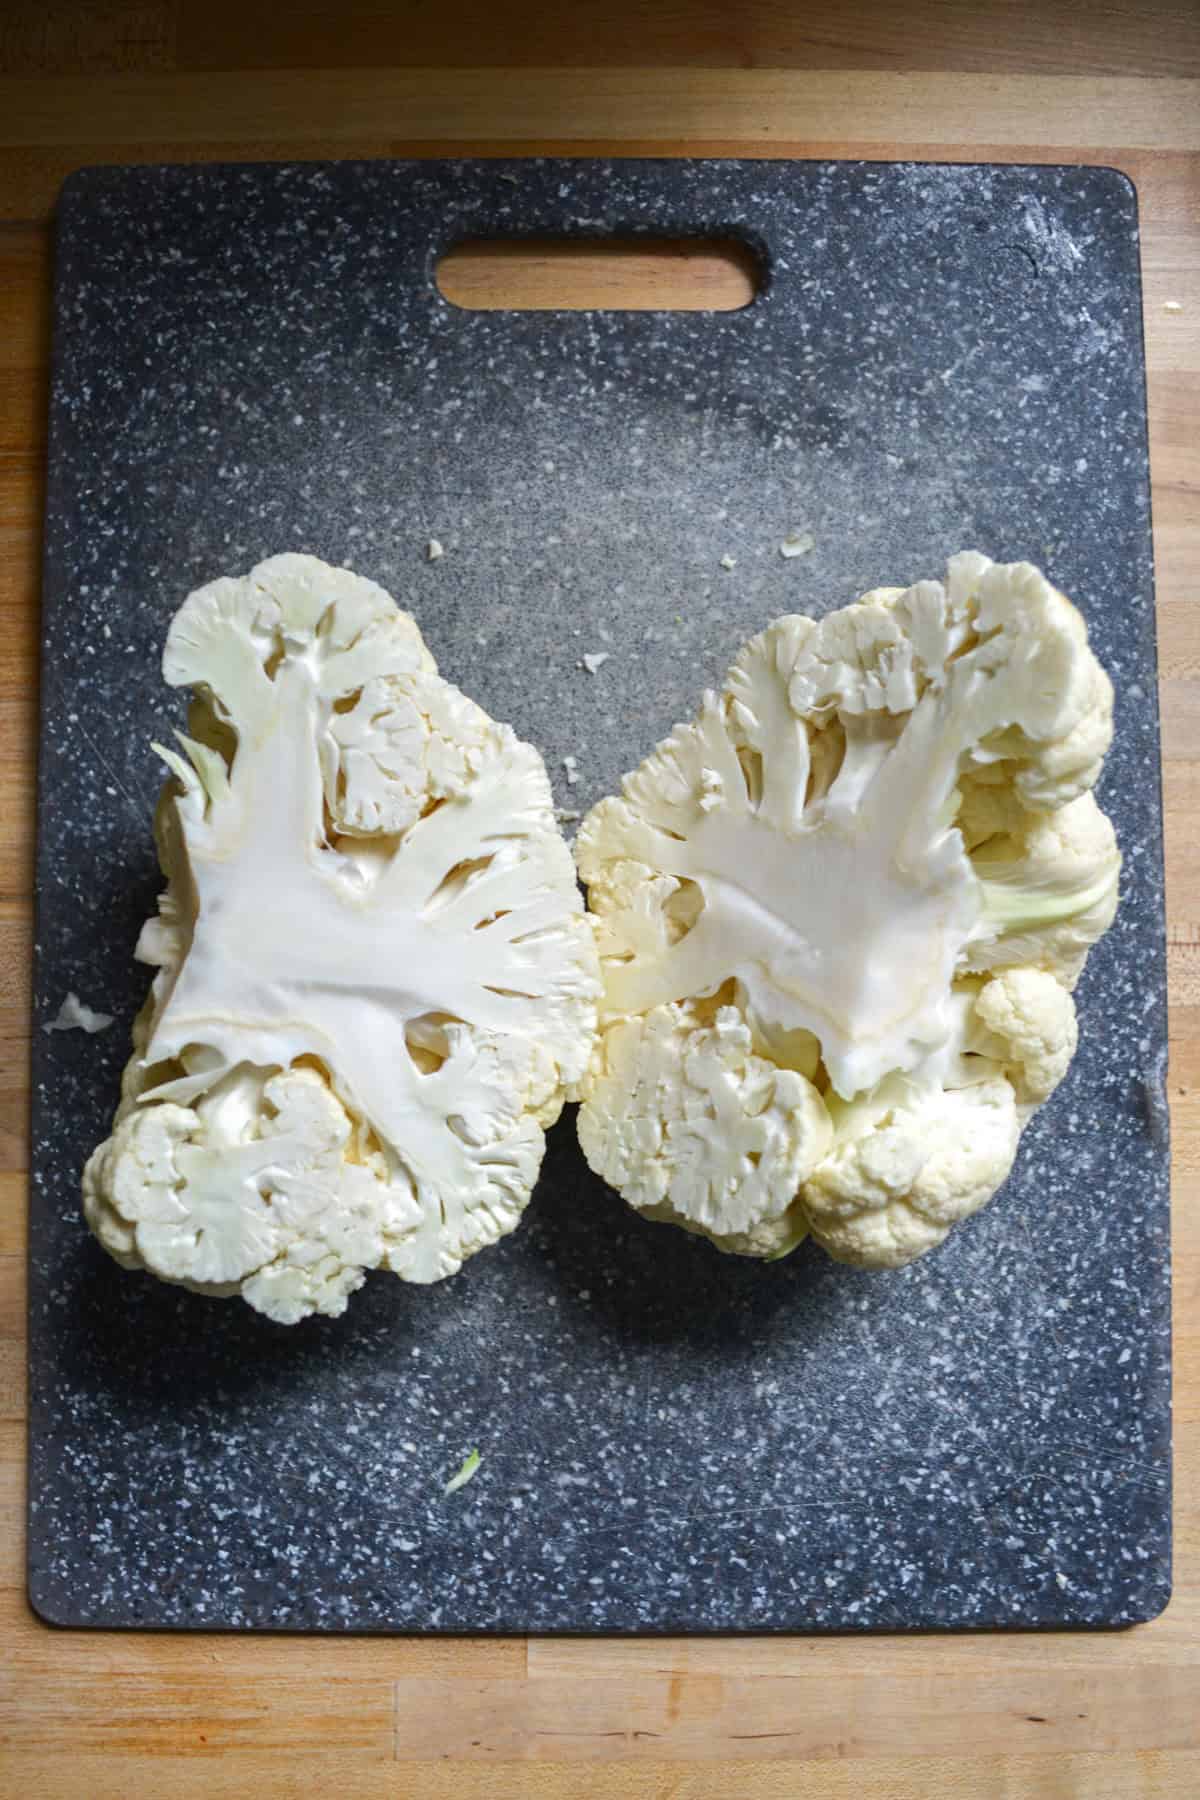 Cauliflower cut in half on a cutting board.